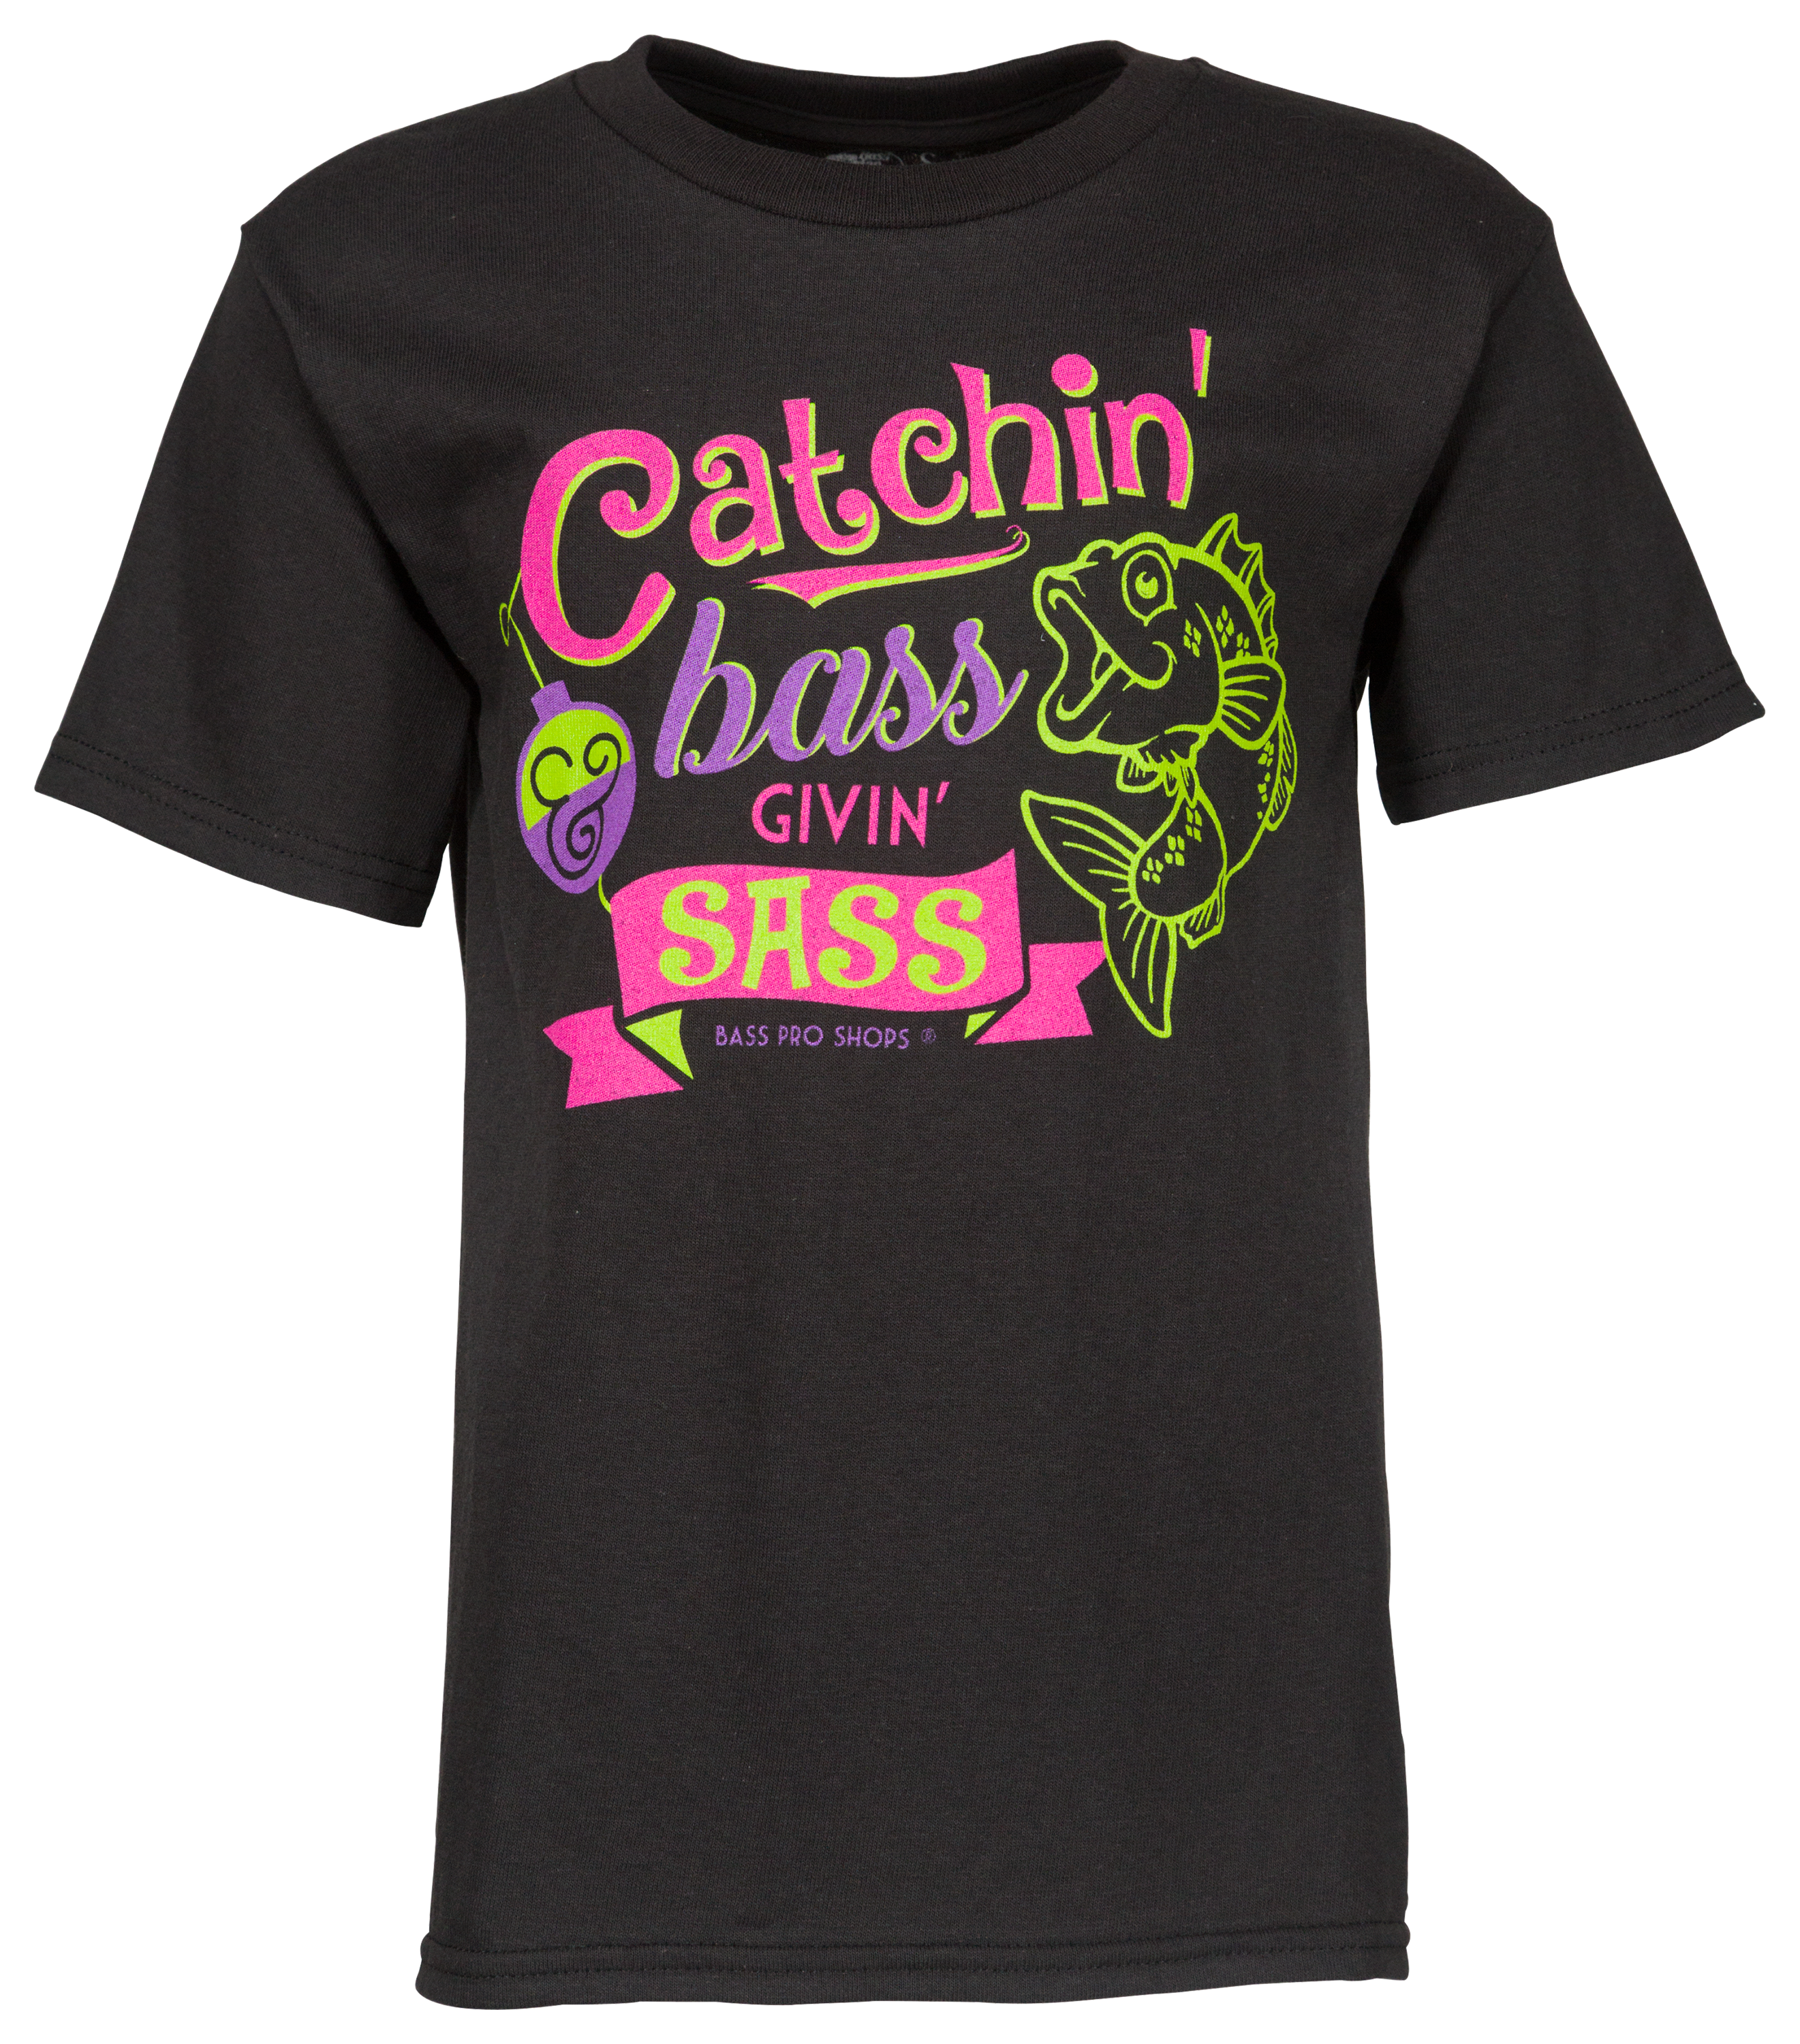 Bass Pro Shops Catchin' Bass Givin' Sass Short-Sleeve T-Shirt for Kids